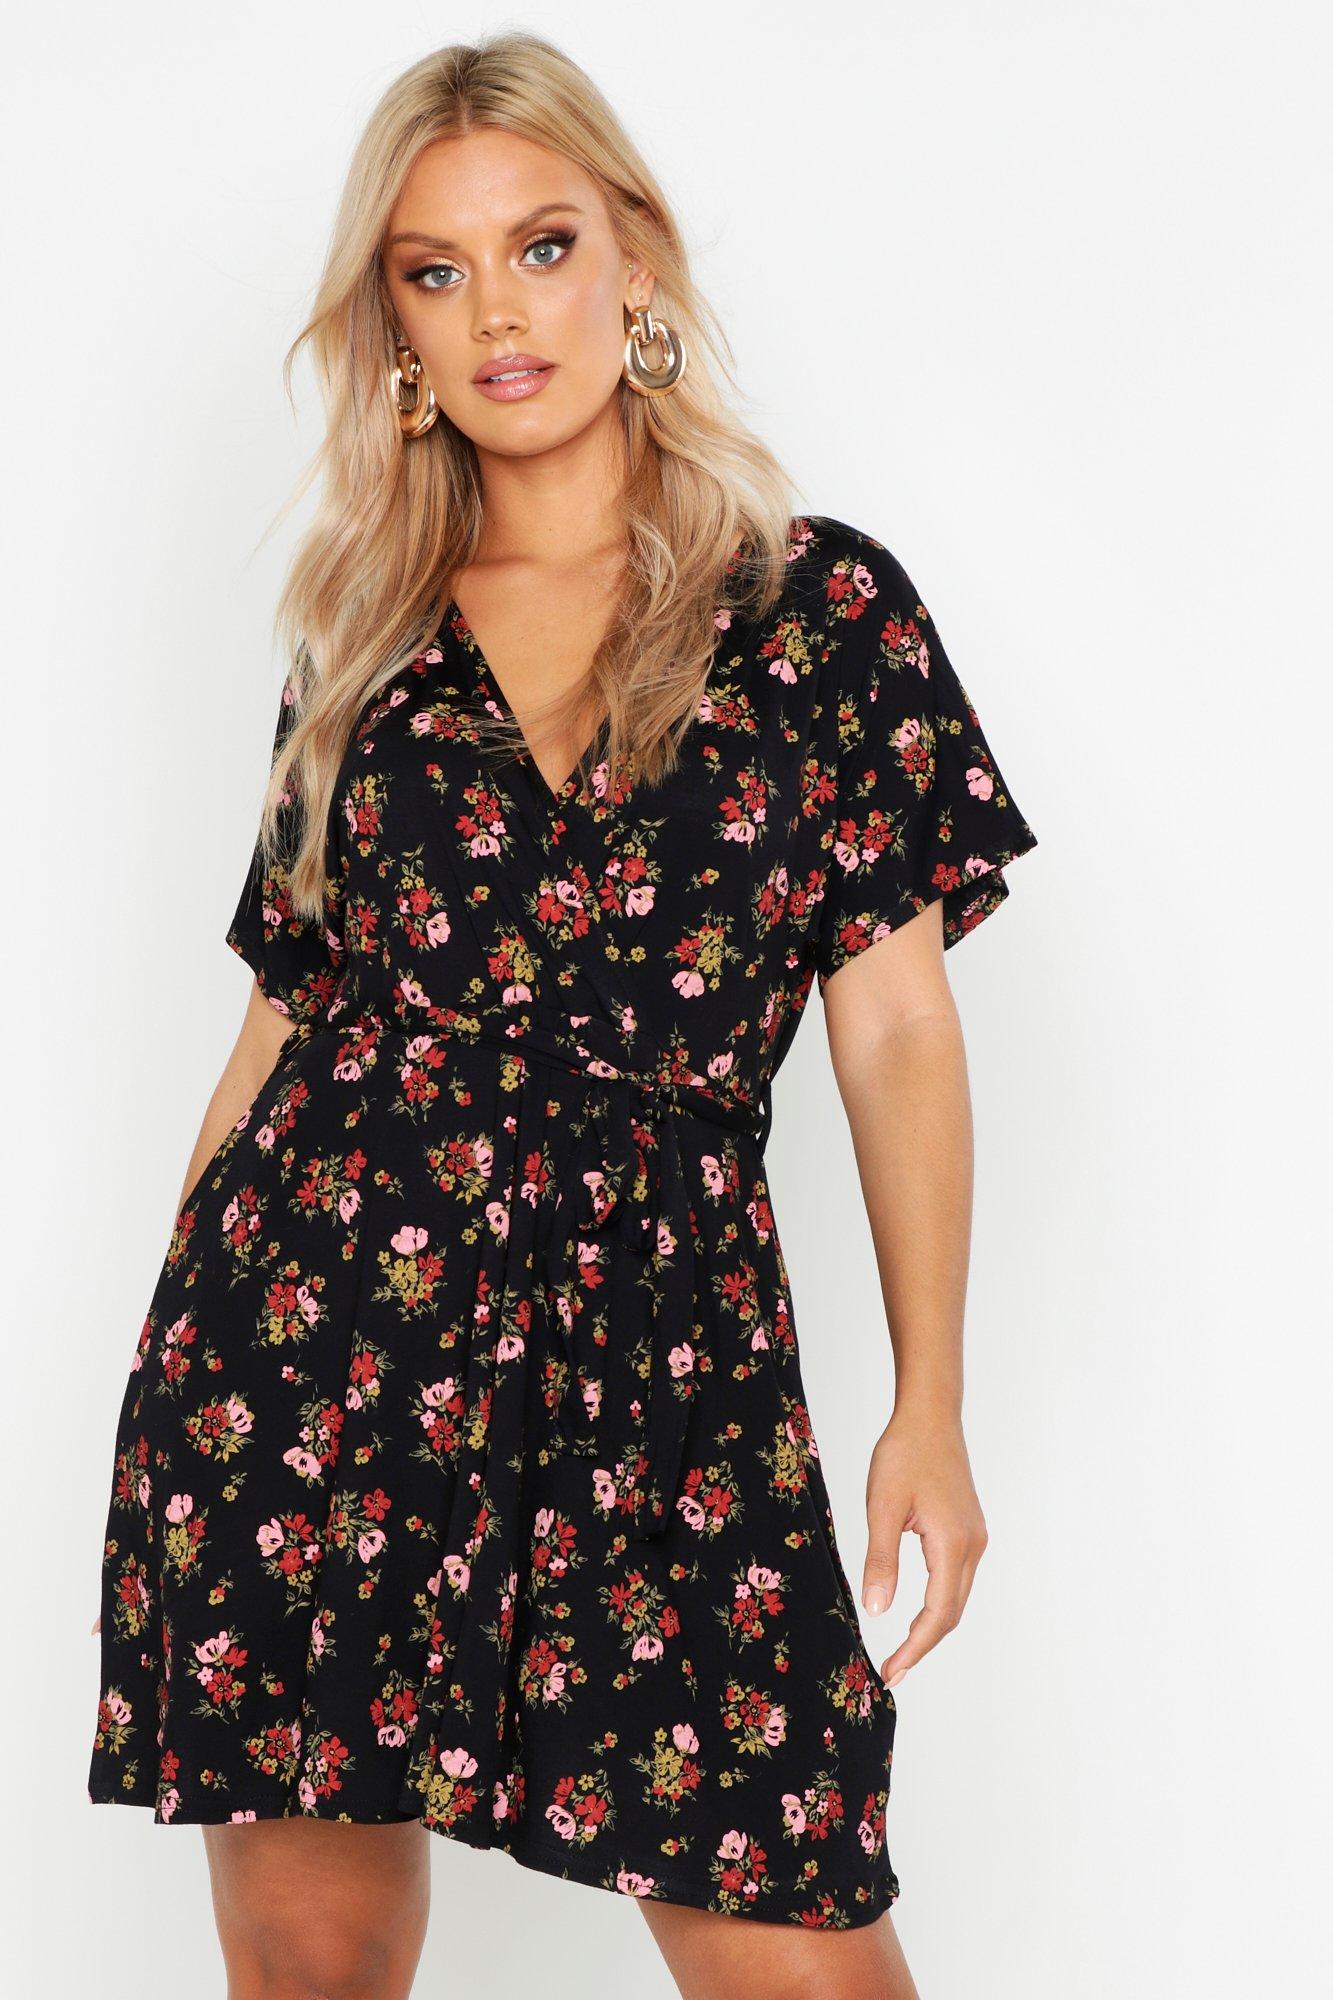 Boohoo Ladies Summer Dresses Online Sale, UP TO 66% OFF | www.loop-cn.com